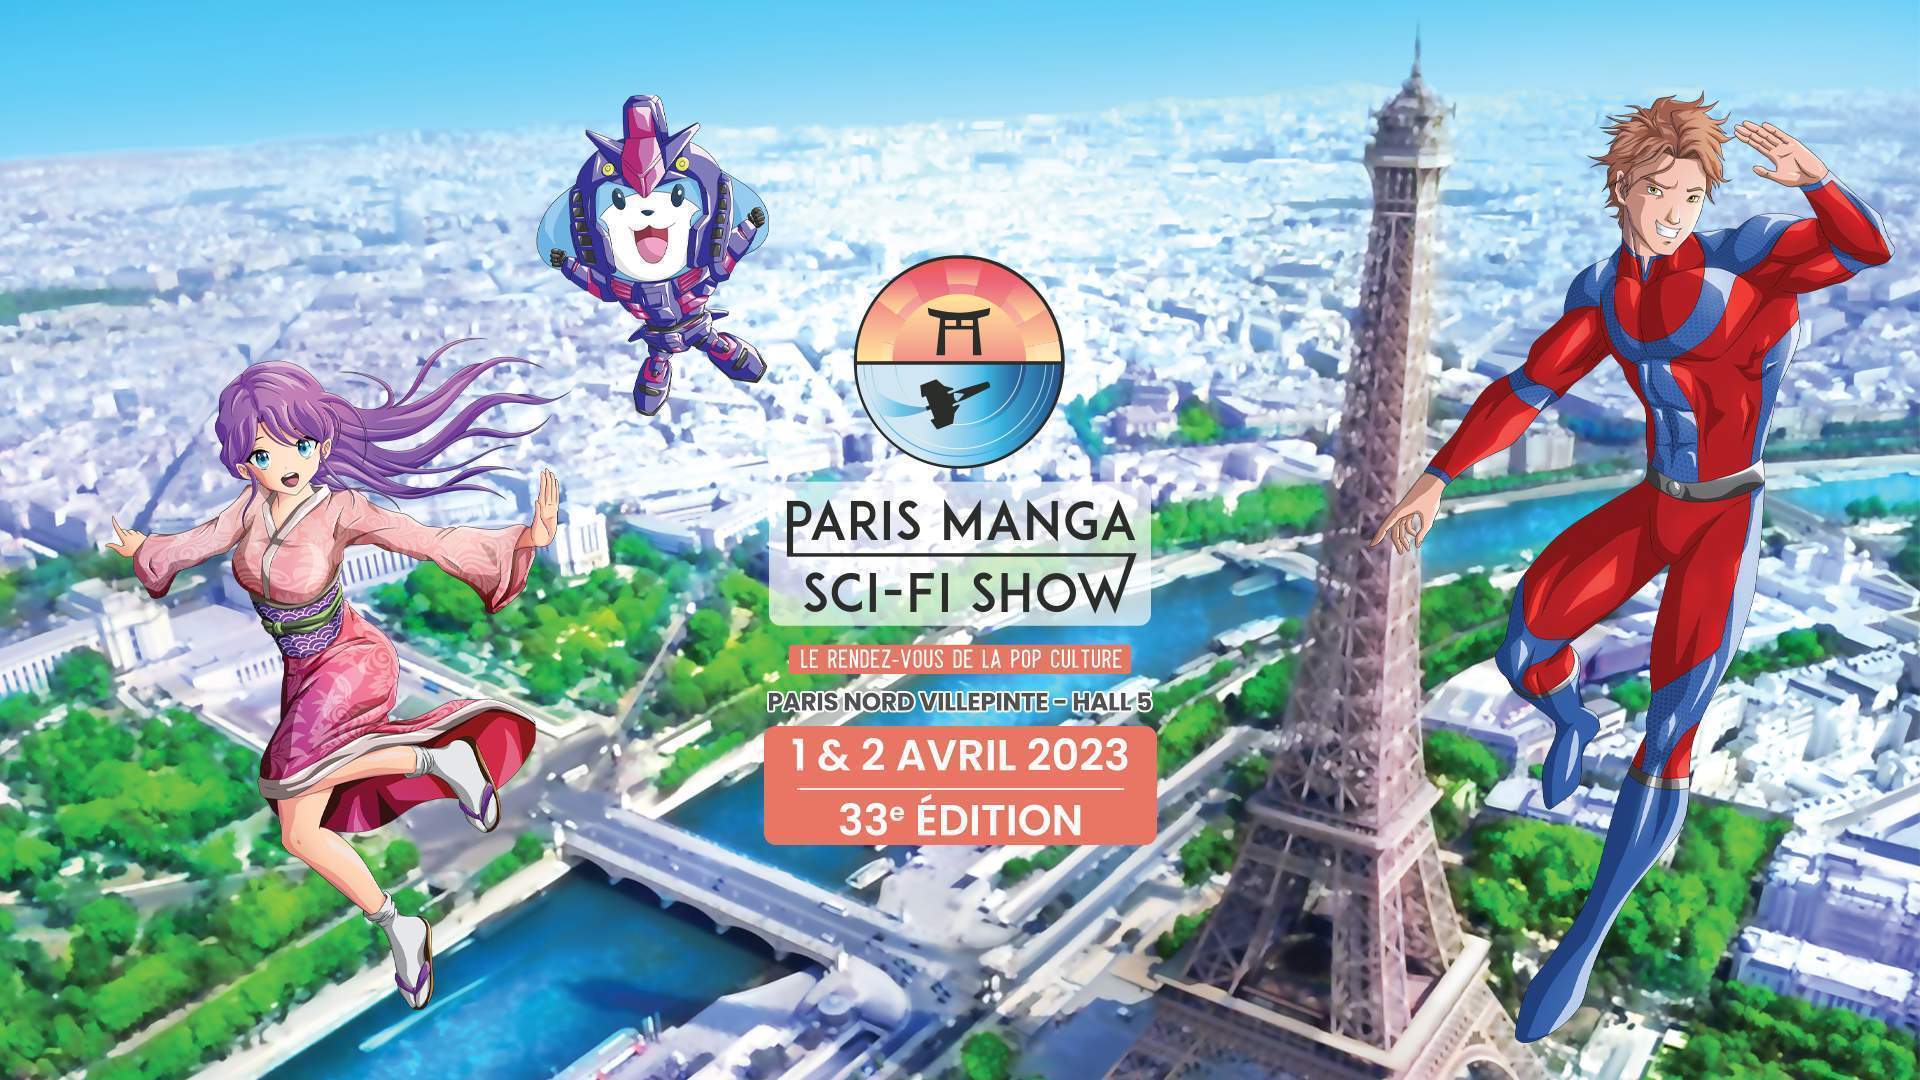 ParisManga Le festival Paris Manga revient pour la saison printemps